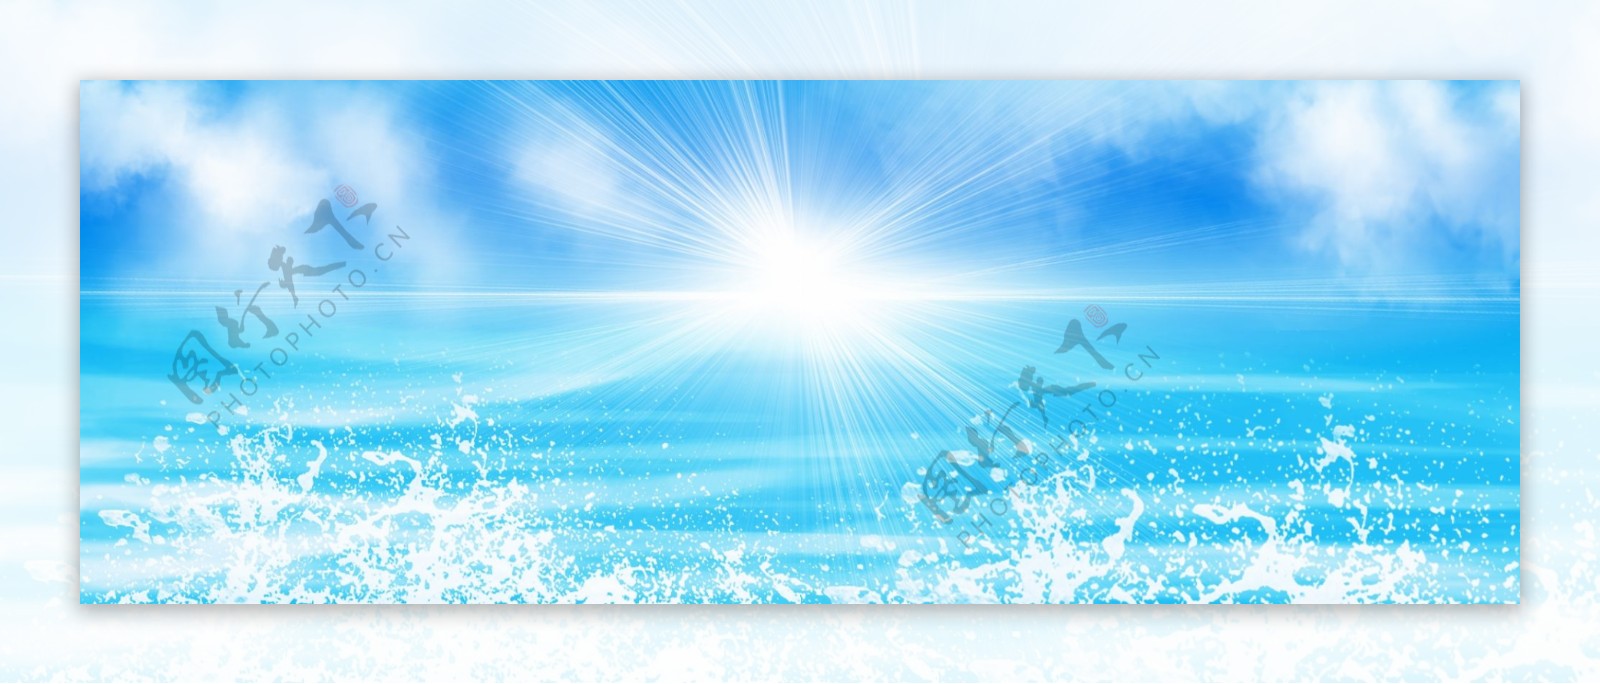 原创蓝色天空阳光海洋浪漫浪花水光背景素材